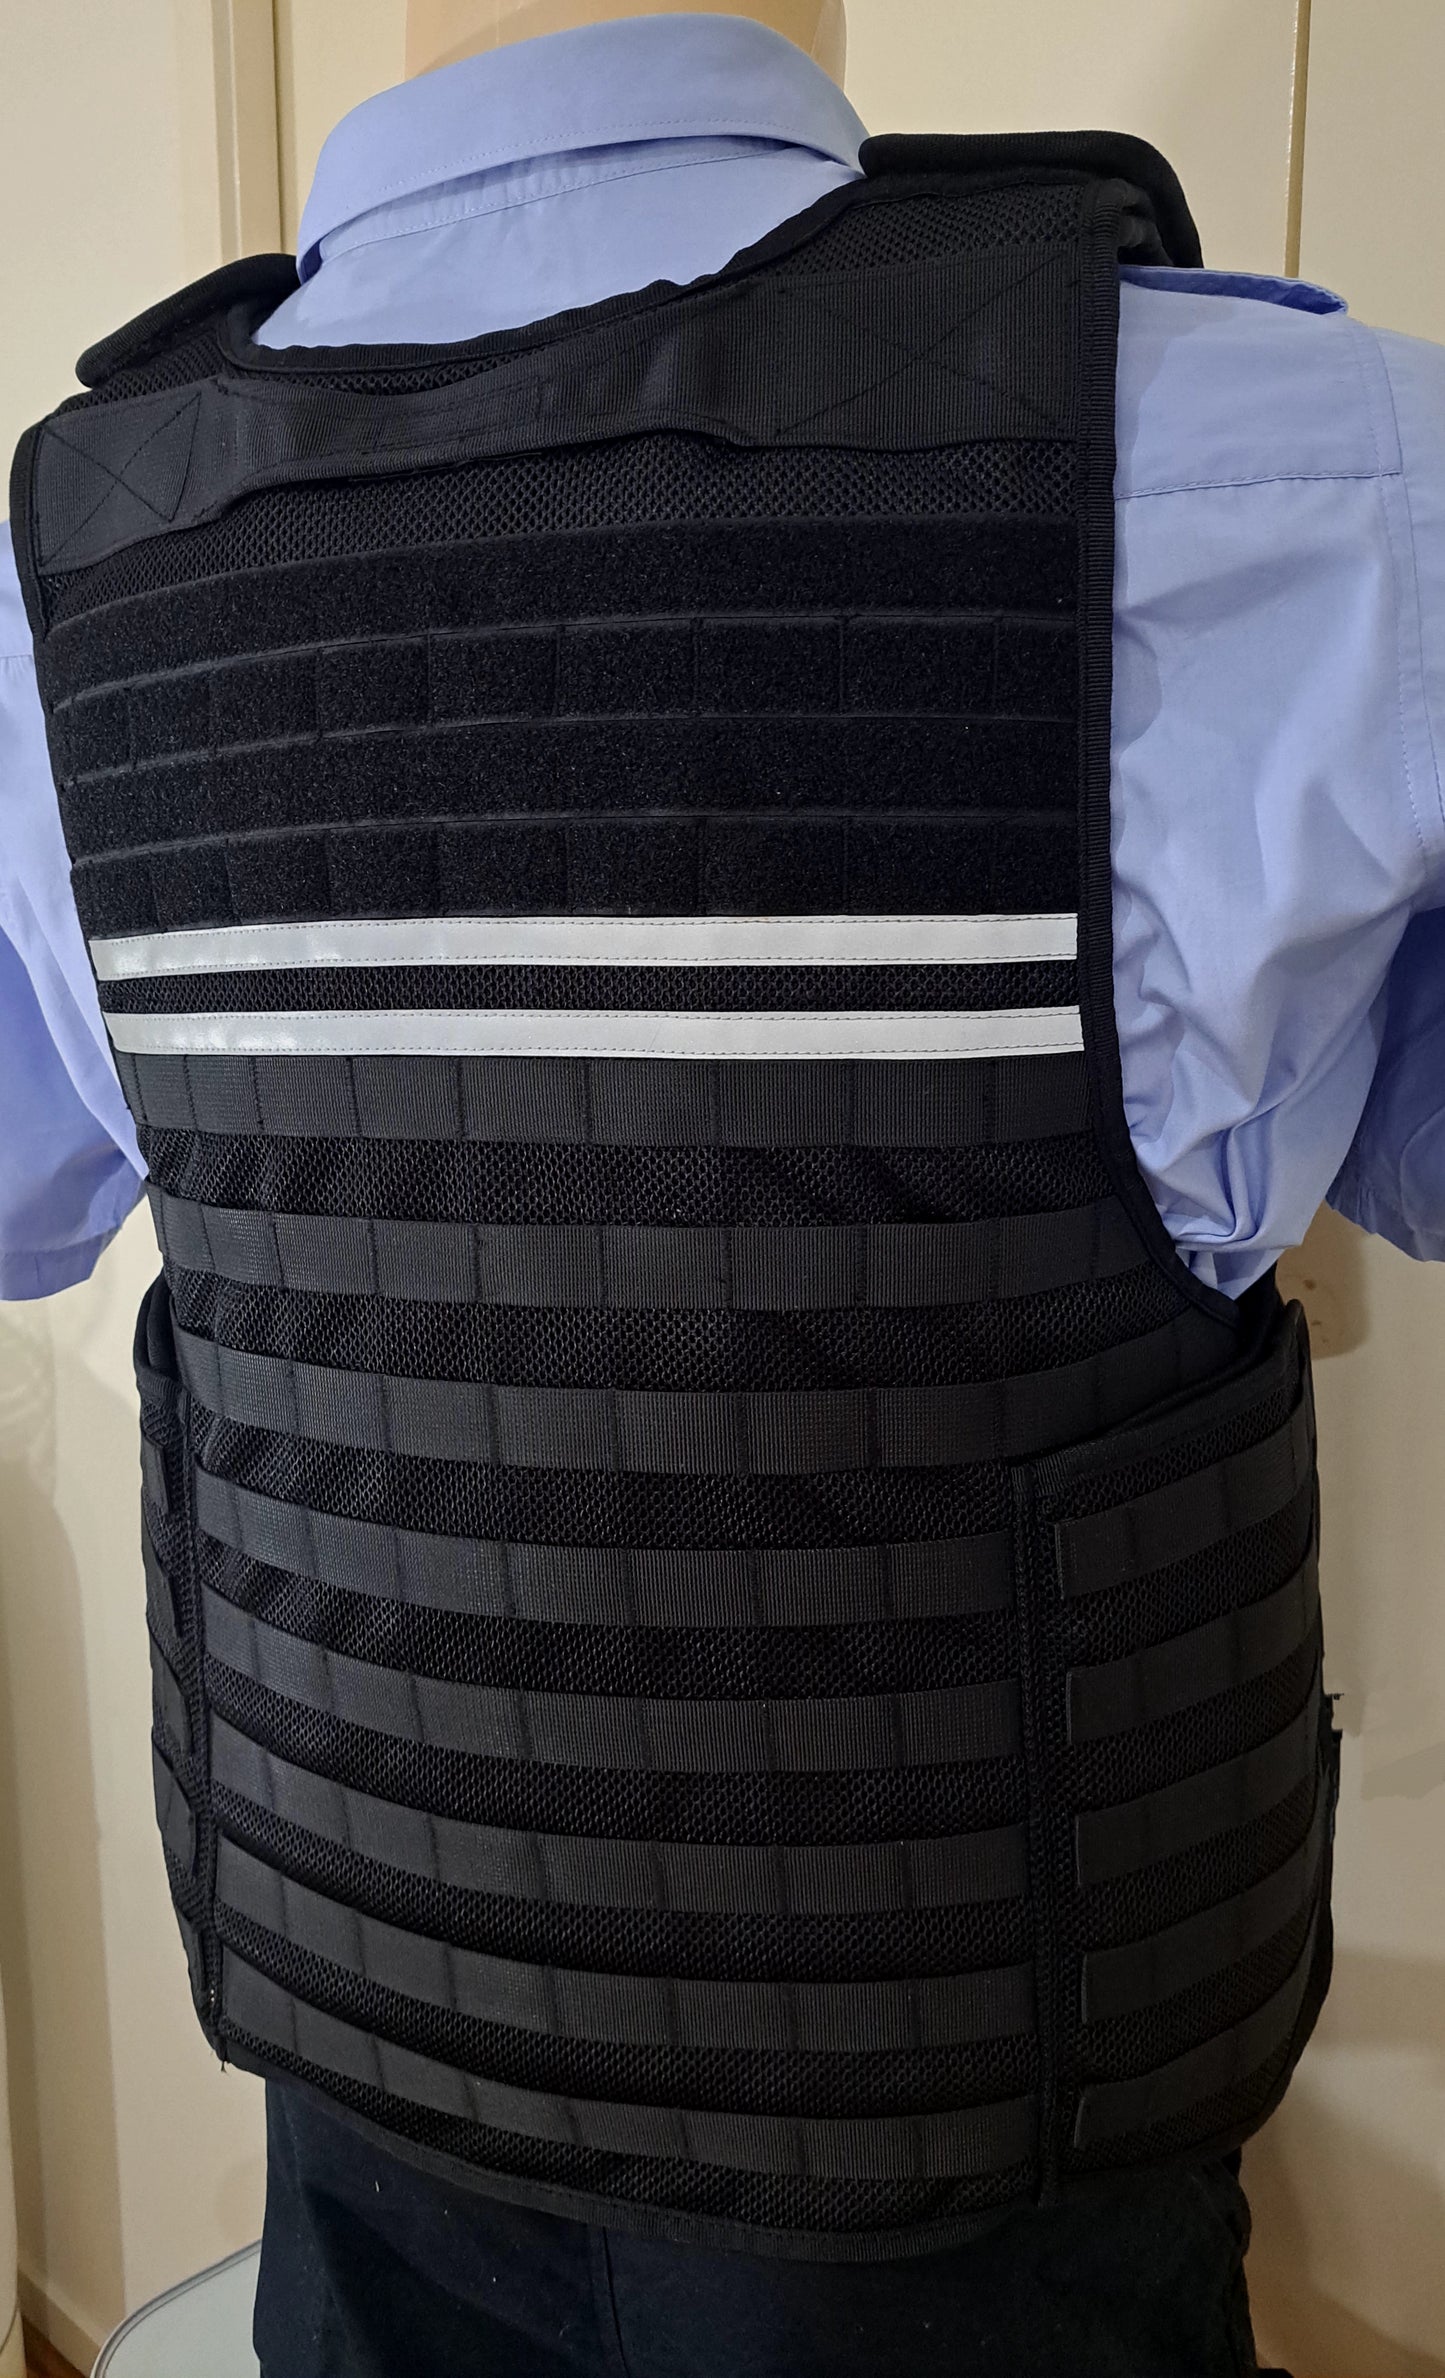 DEFENDER-3 The Latest Design Defender Stab Protection Vest